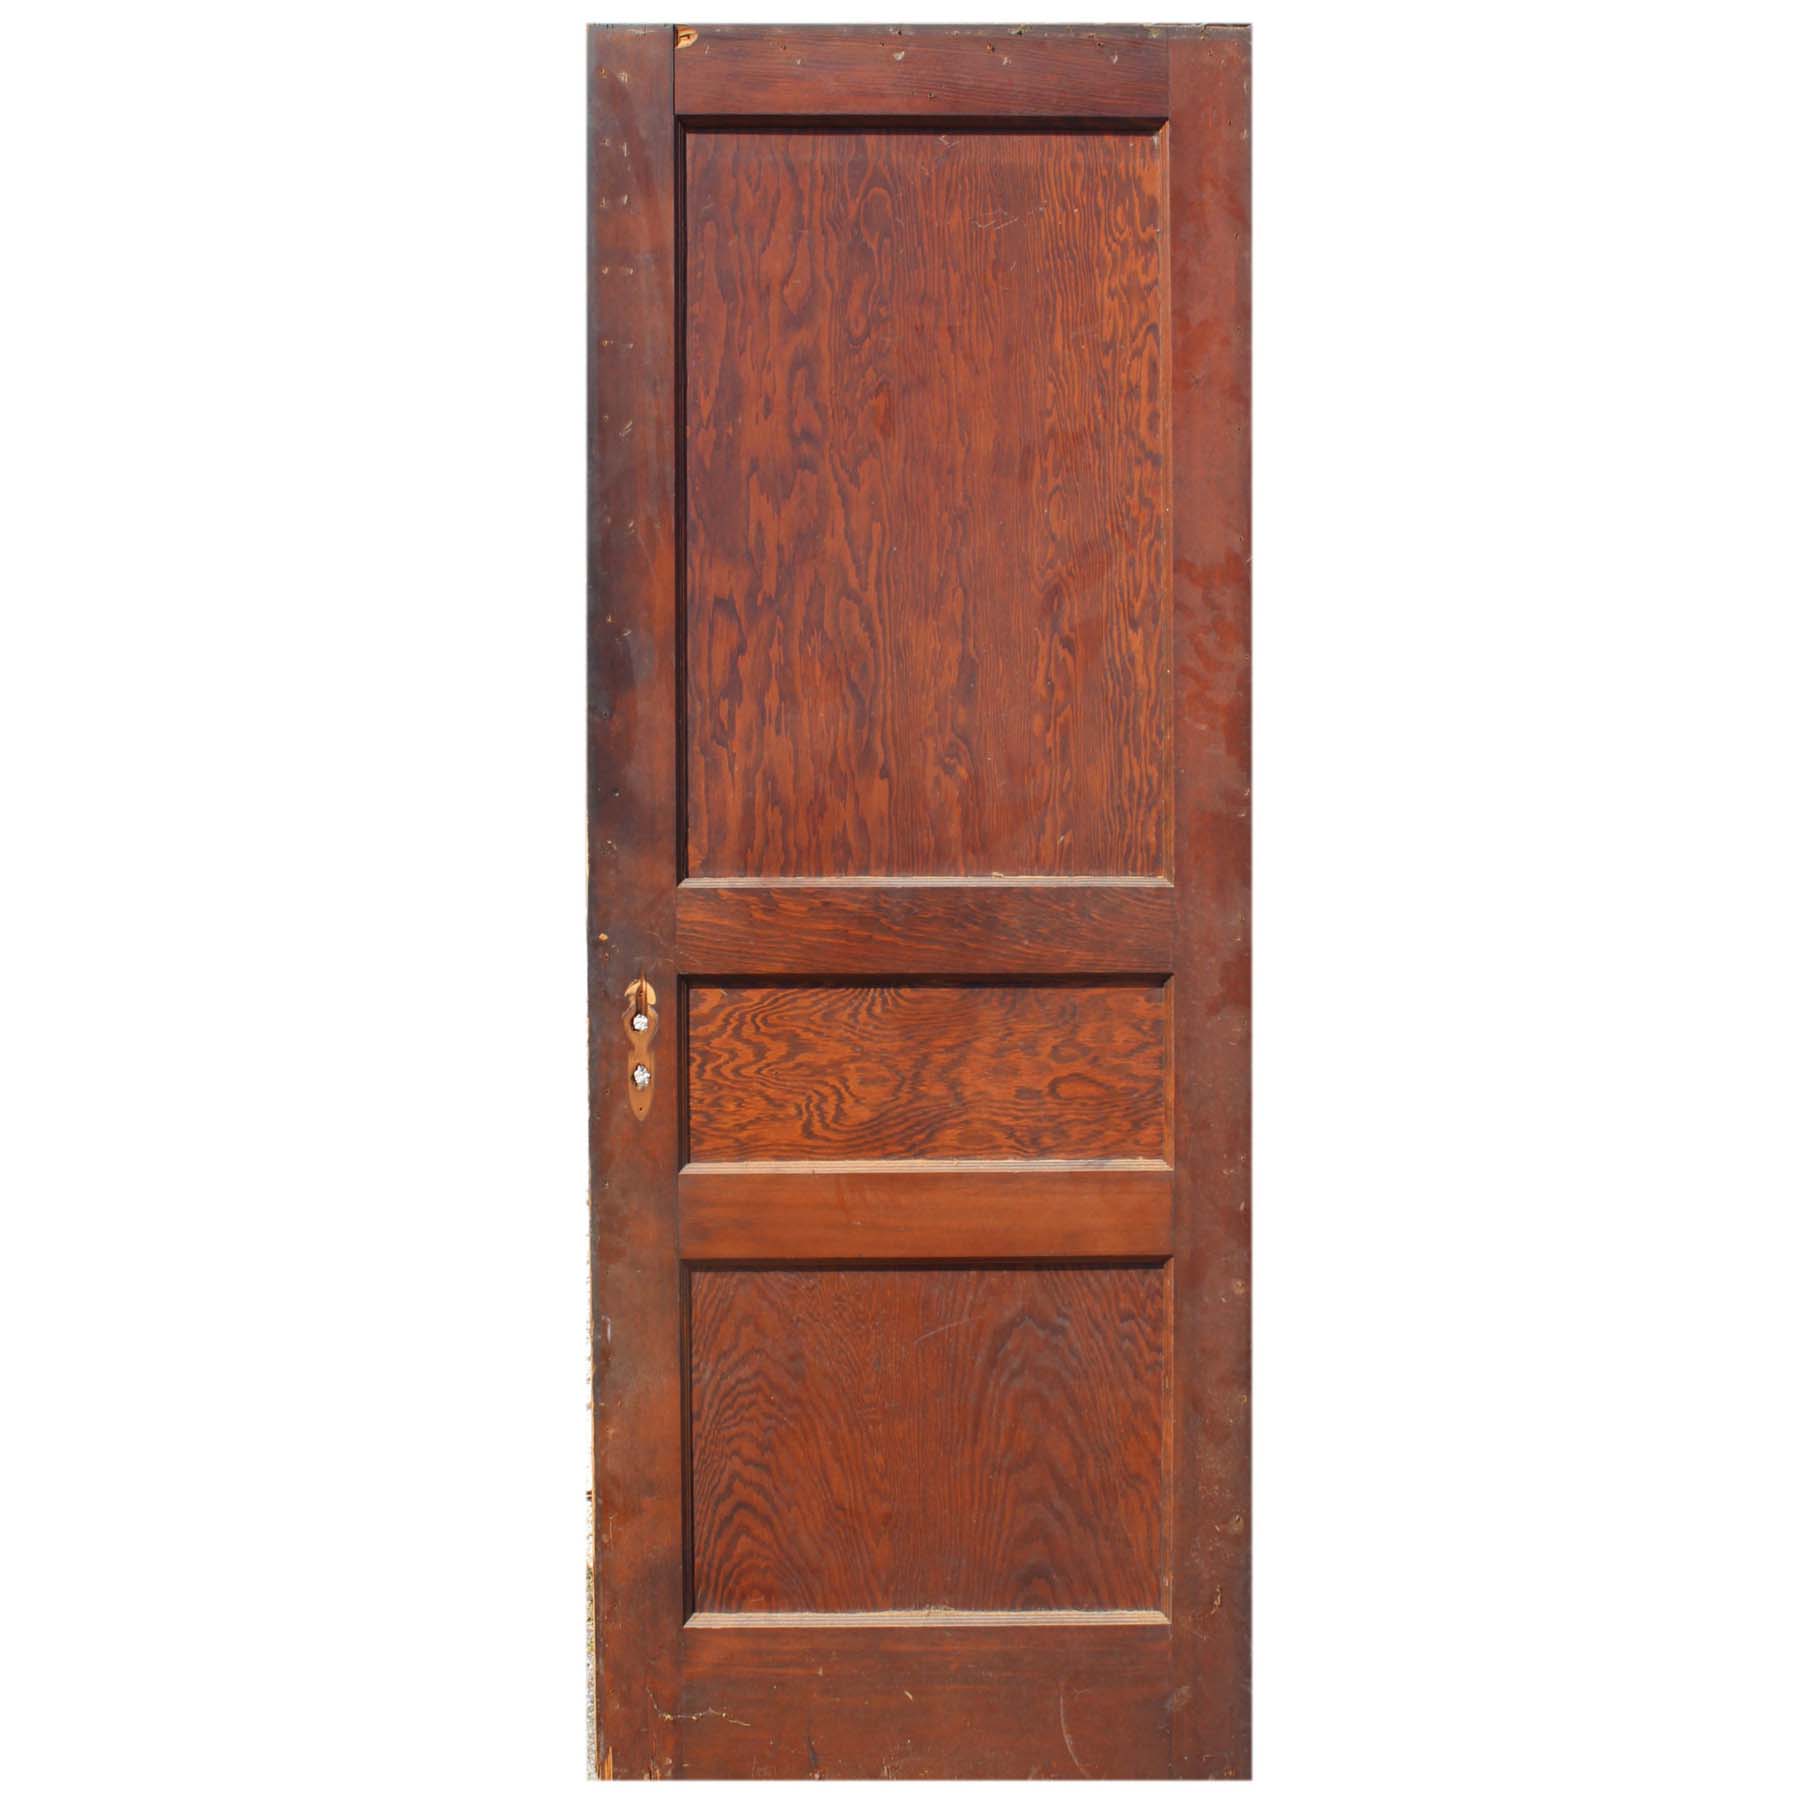 SOLD Antique 30” Three-Panel Solid Wood Door-71720